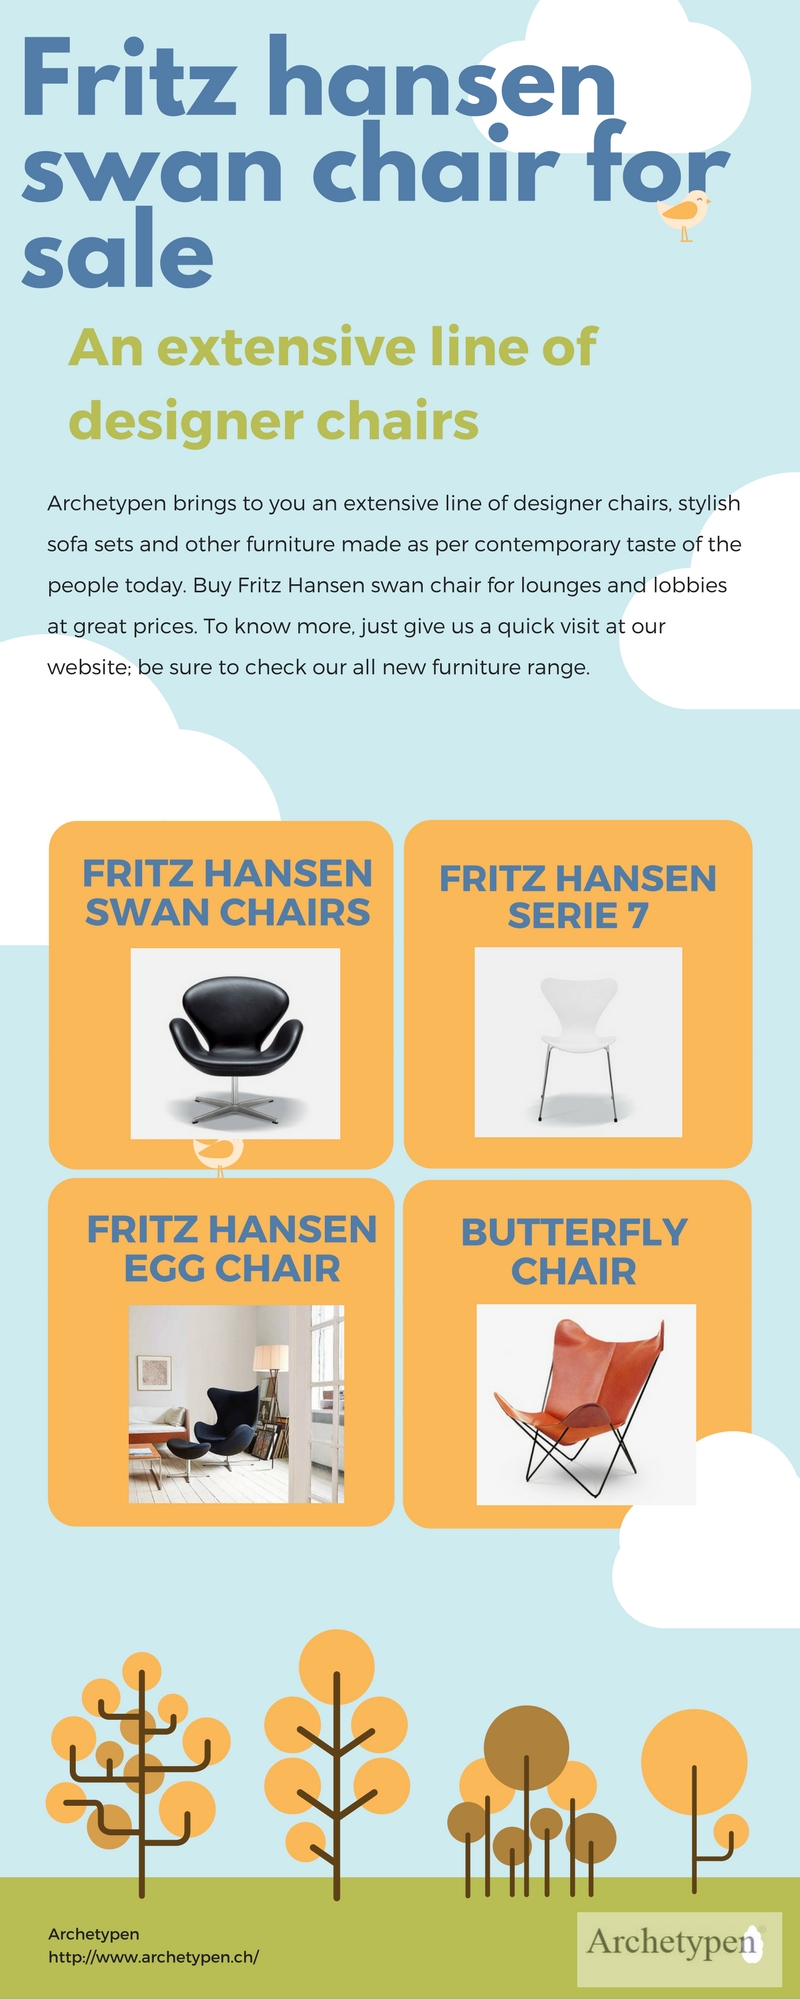 Fritz hansen swan chair for sale.jpg  by archetypen